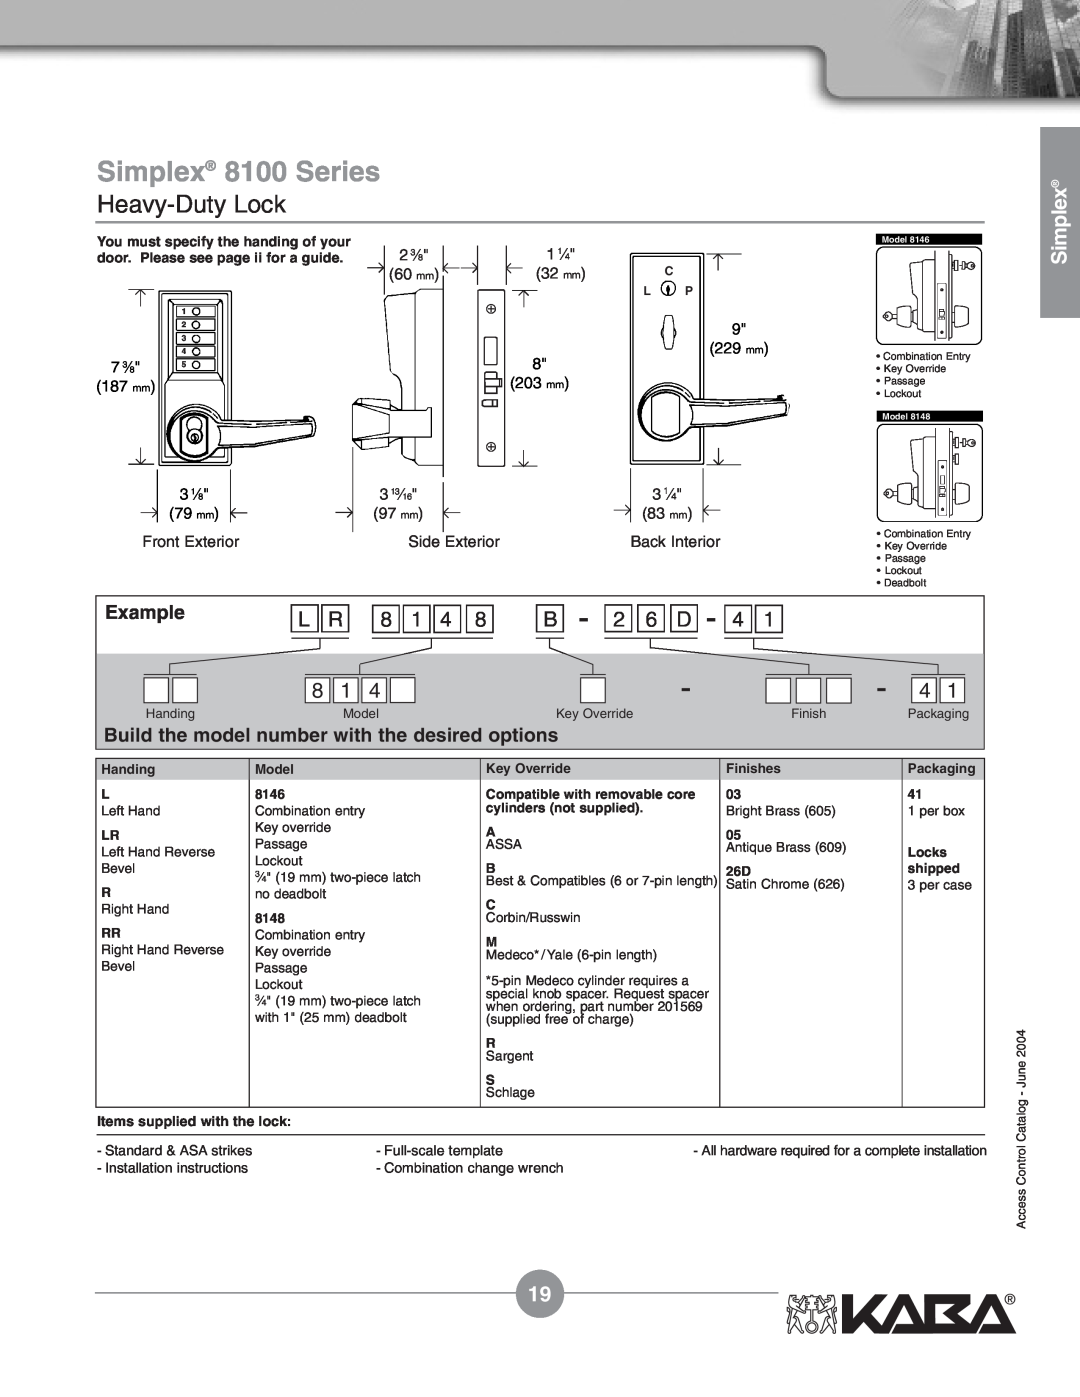 Assa Mechanical Pushbutton Locks manual L R 8 1 4, B - 2 6 D, Simplex 8100 Series, Heavy-Duty Lock, Example 